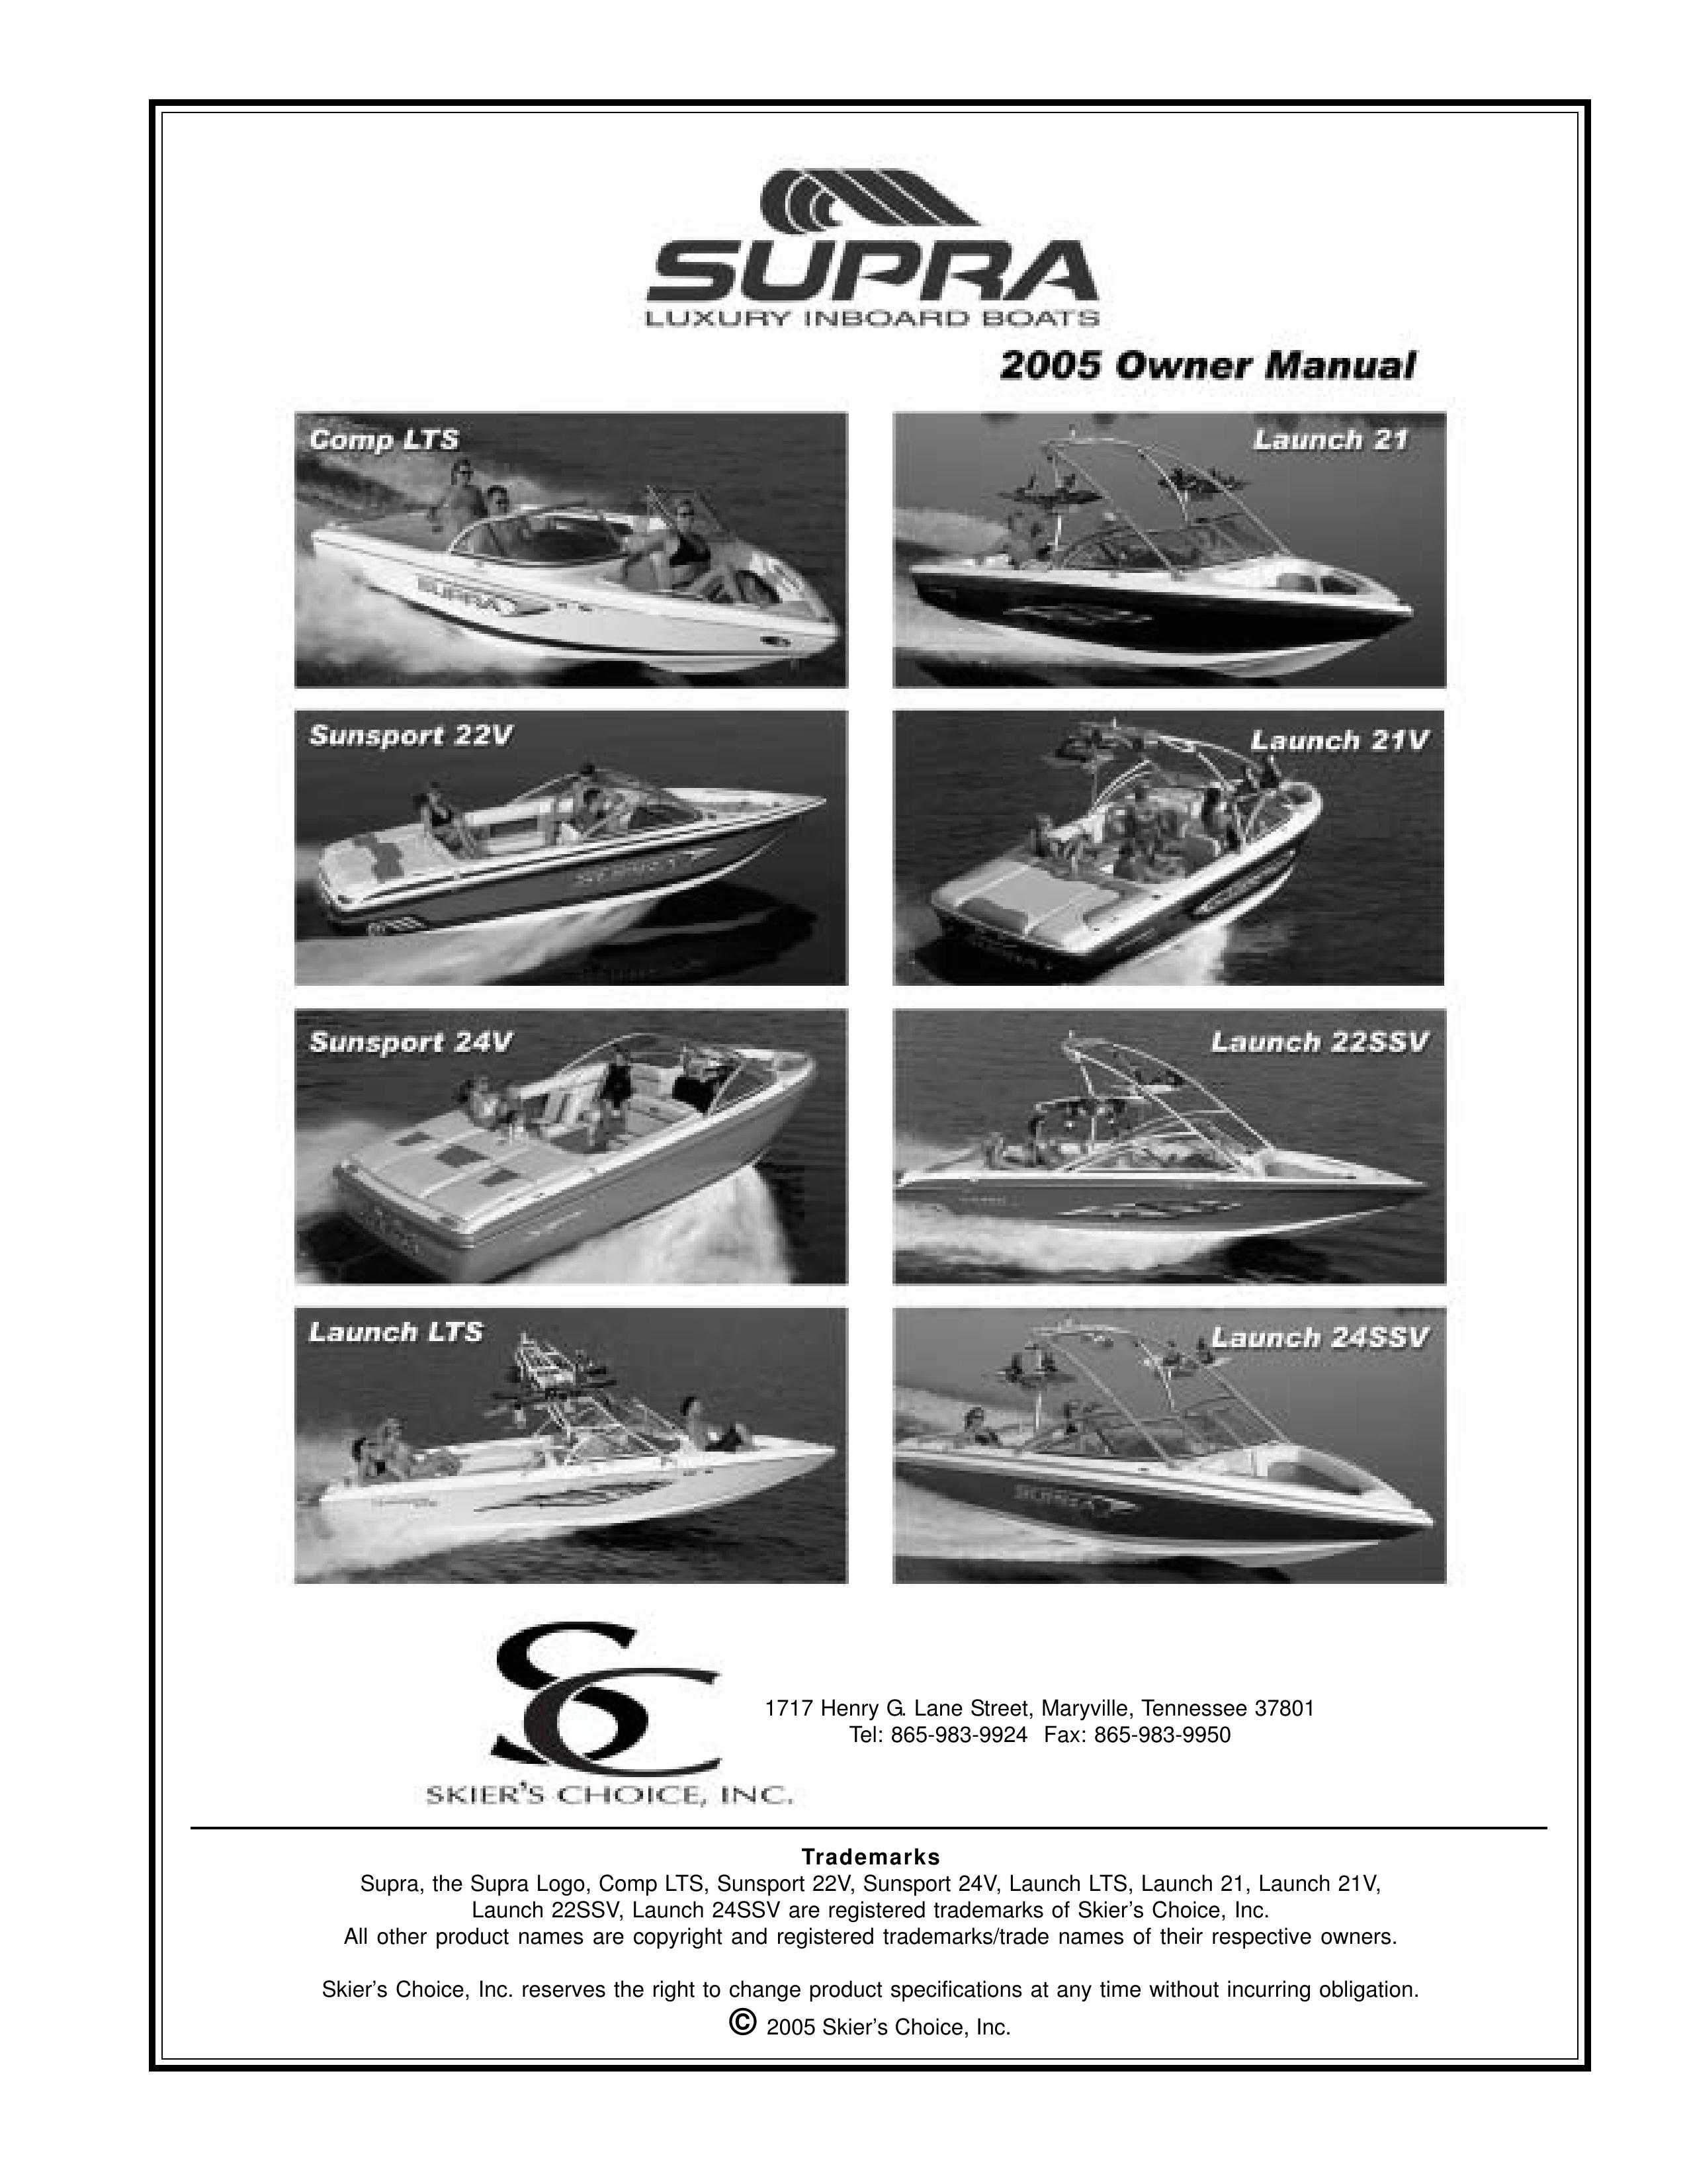 Supra SUNSPORT 22V Boat User Manual